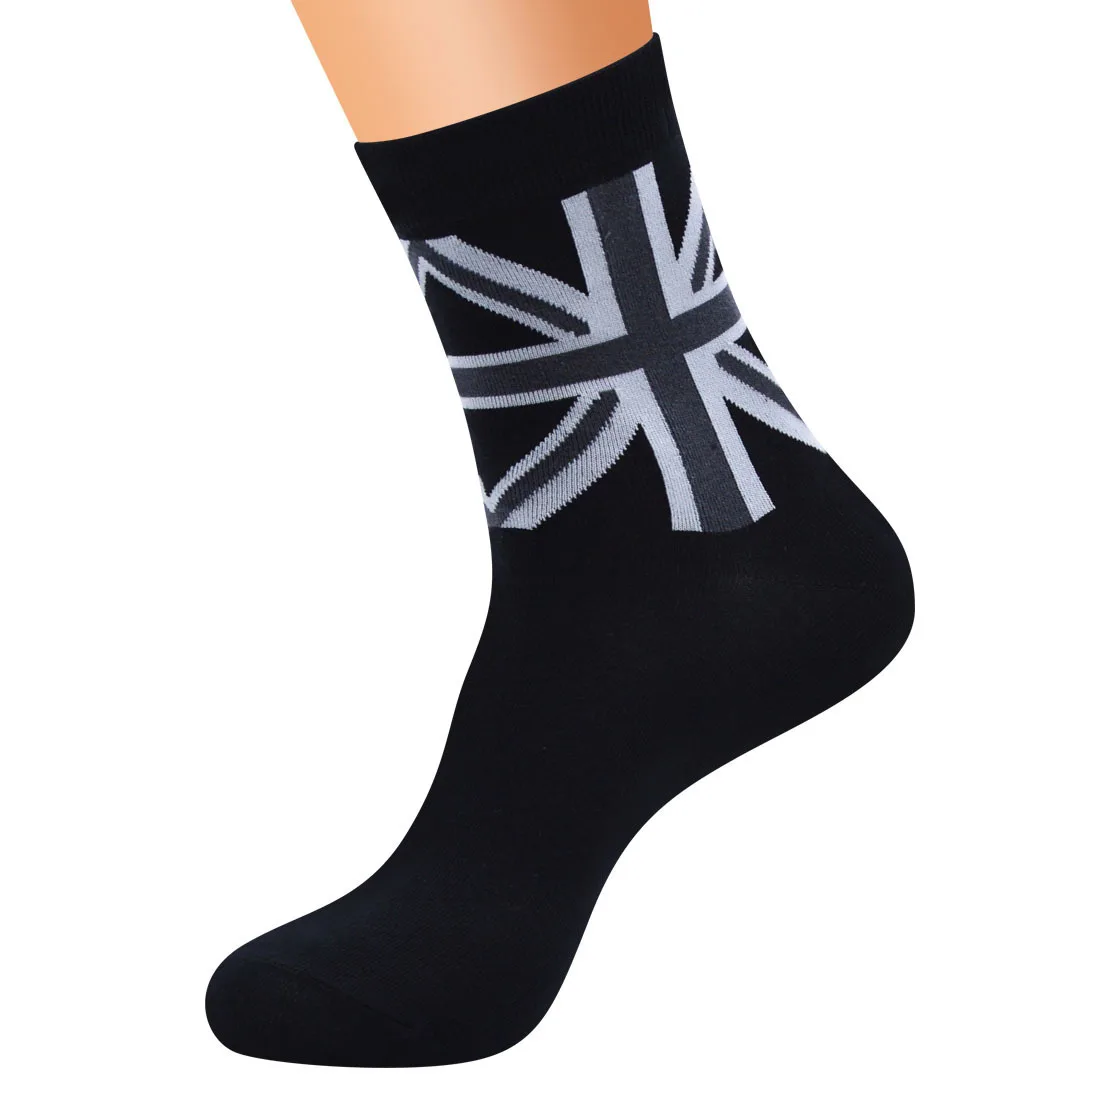 Для мужчин Бизнес Повседневное высокое качество носки Национальный флаг серии Для мужчин Ins Гольфы хлопковые звезда полосой платье мужской подарок - Цвет: 3